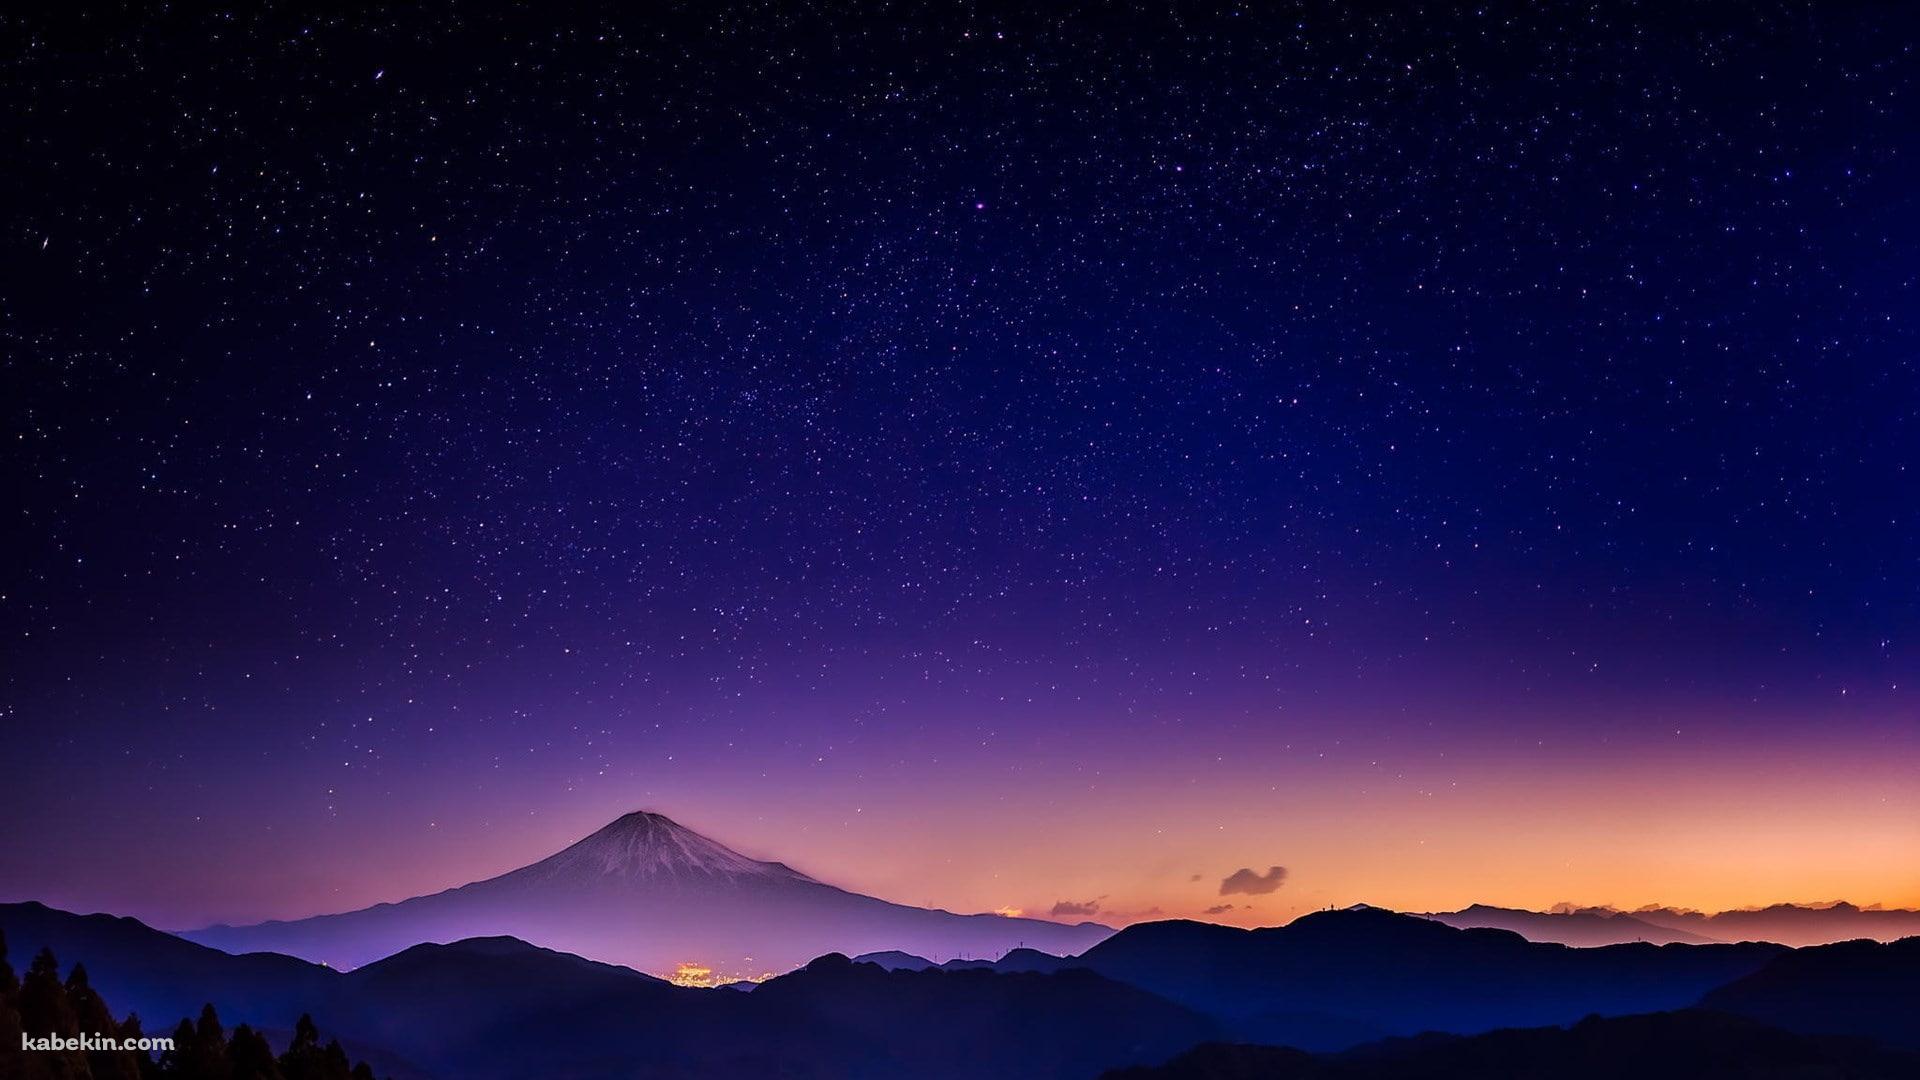 富士山と銀河の壁紙(1920px x 1080px) 高画質 PC・デスクトップ用